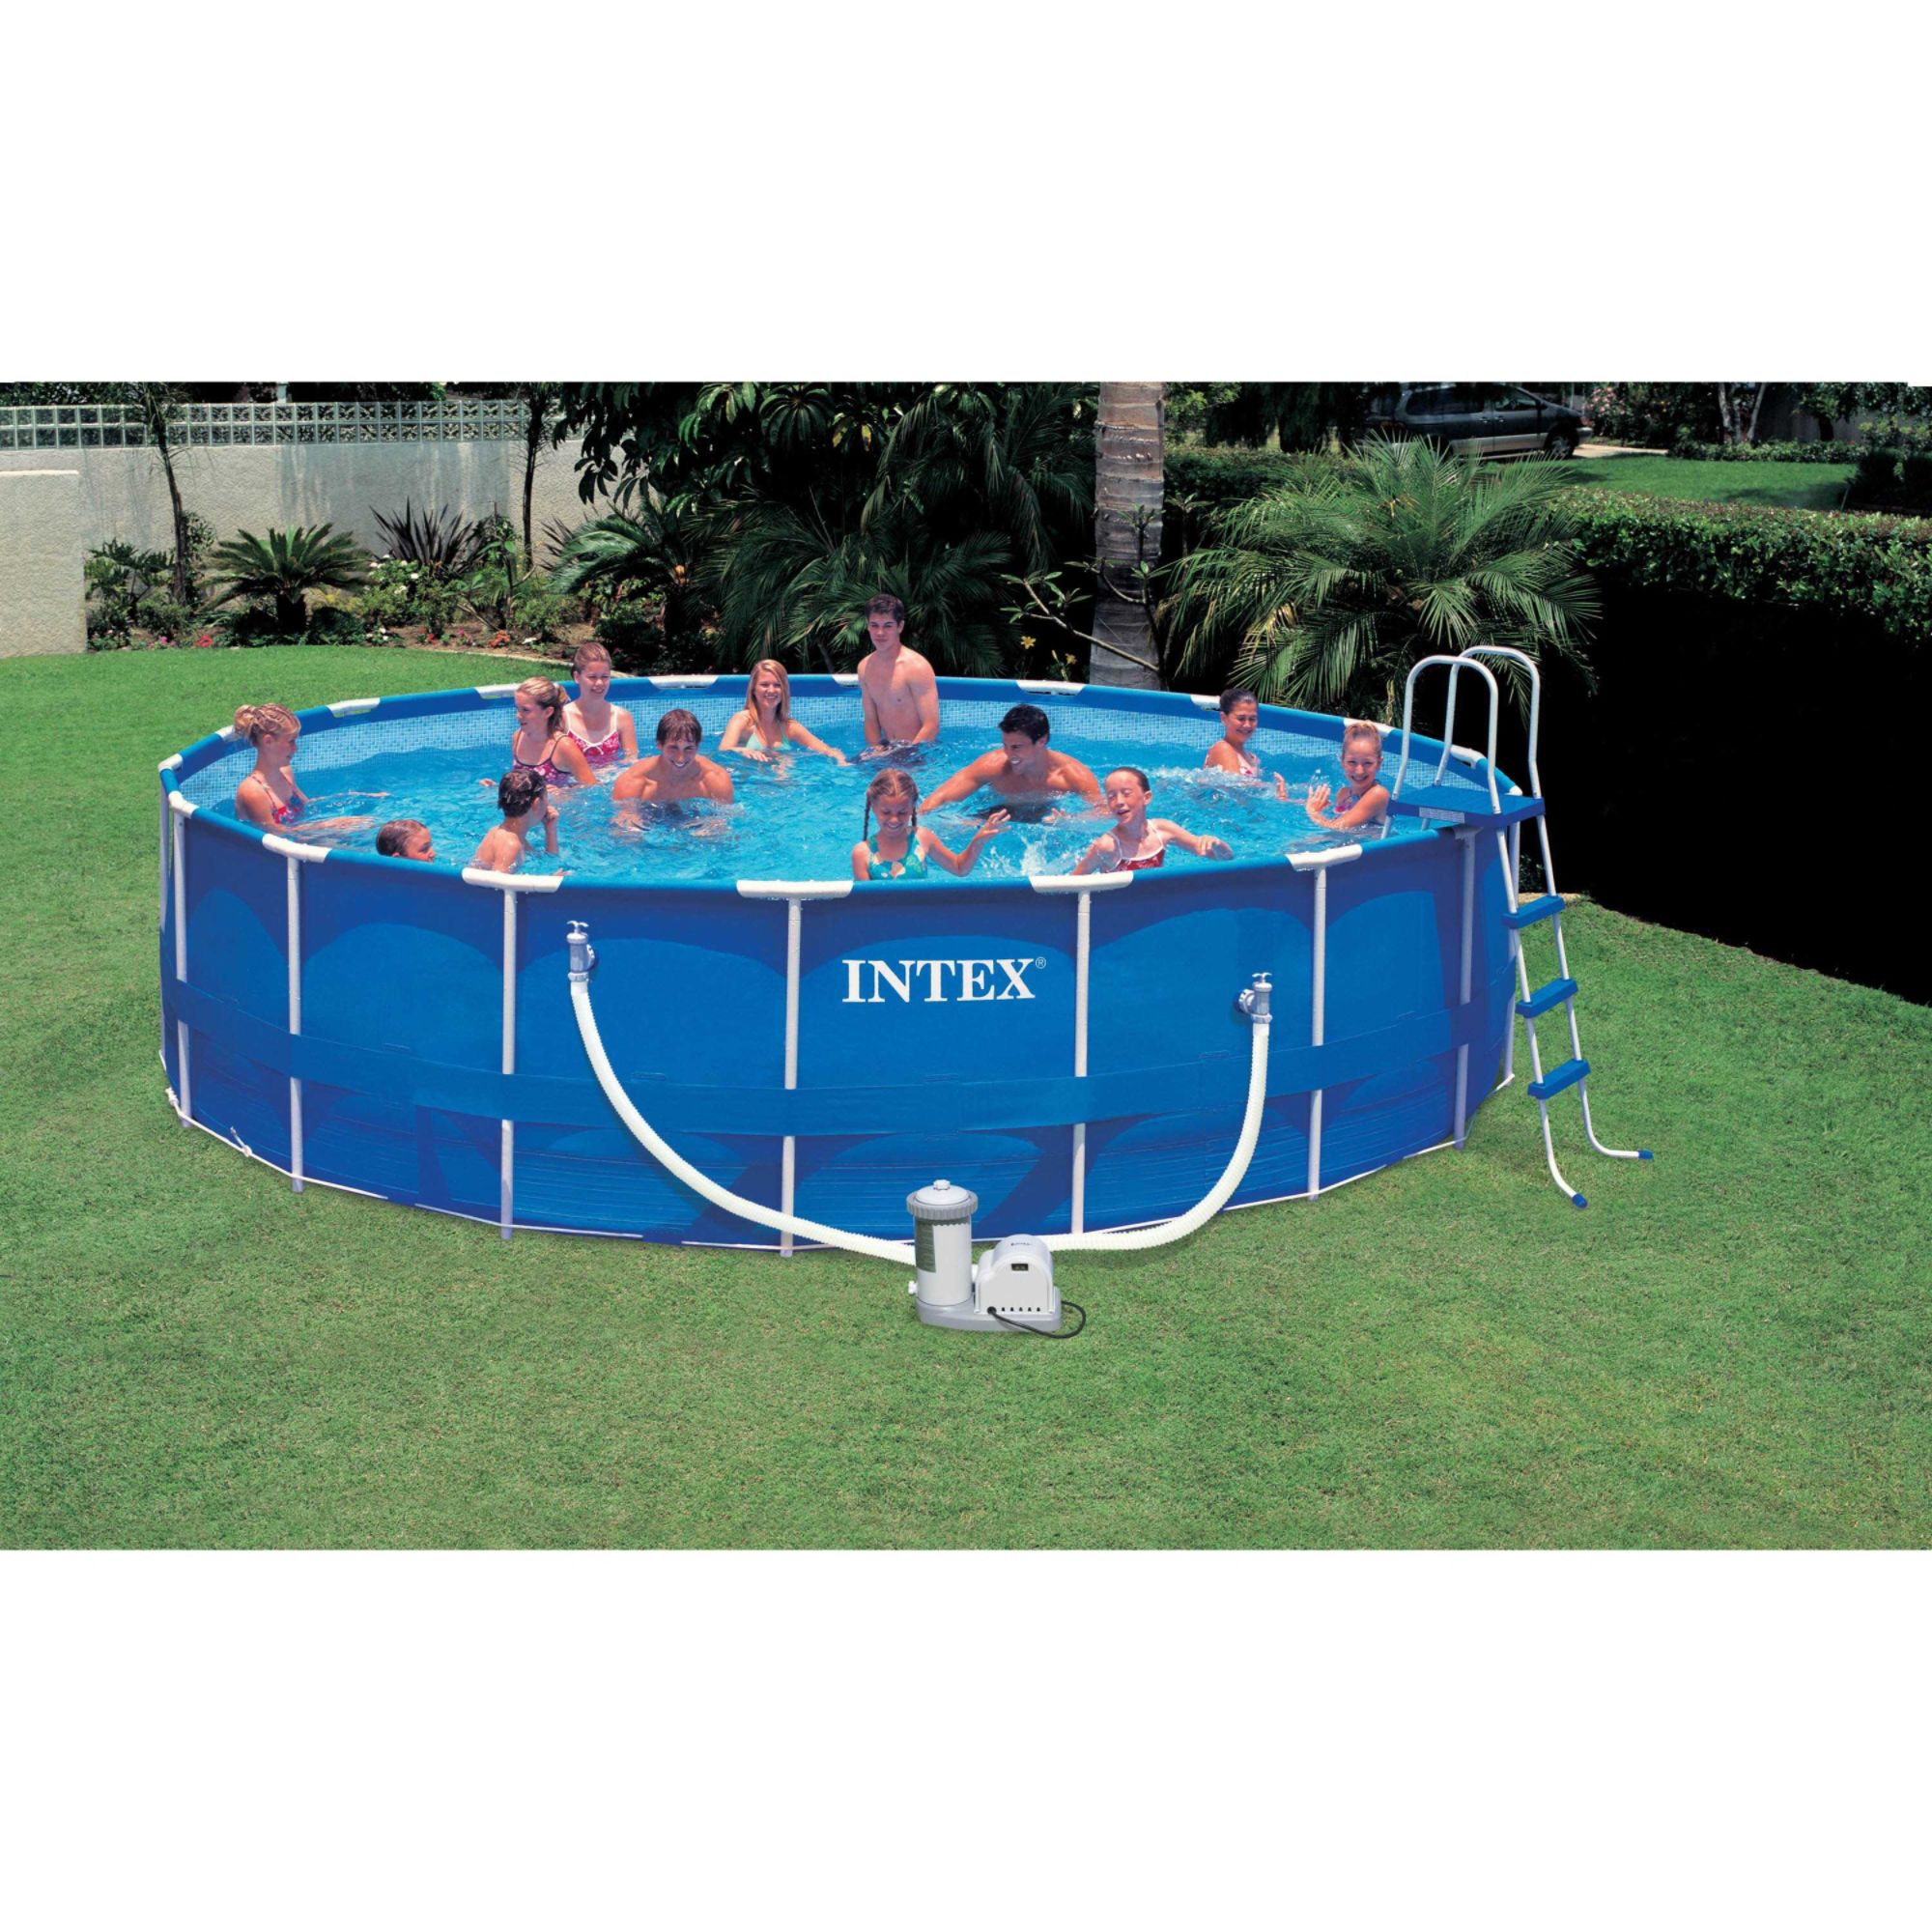 Intex 18' x 48" Round Metal Frame Pool Package Sears